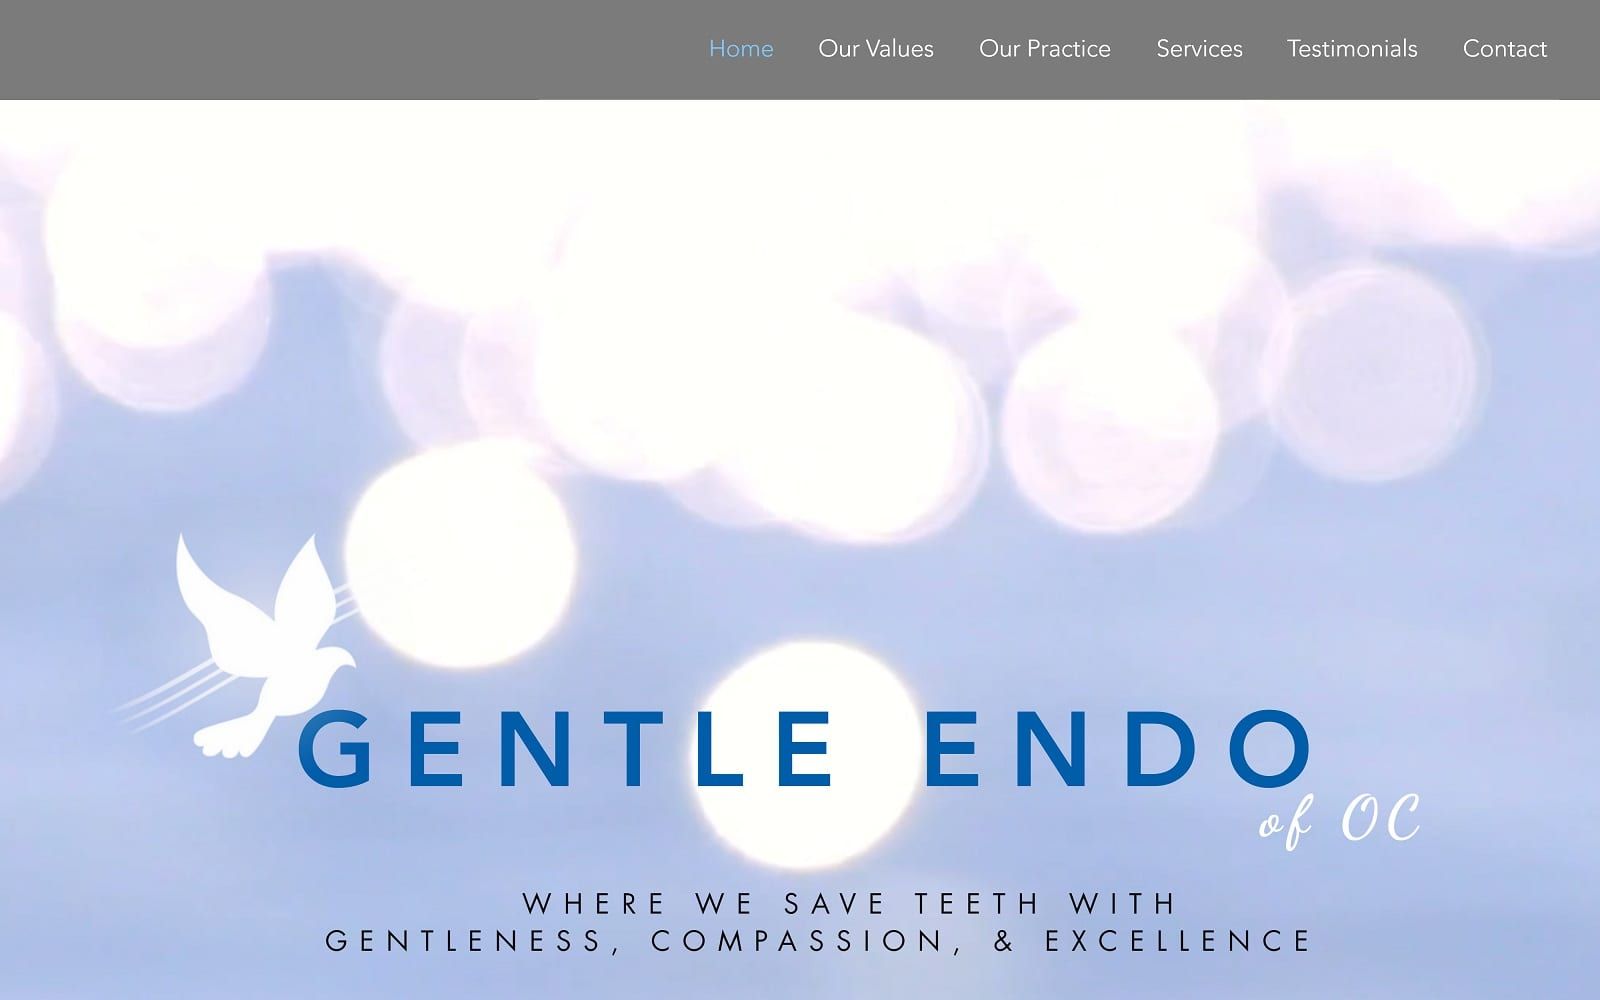 The screenshot of gentle endo of oc gentleendooc. Com website